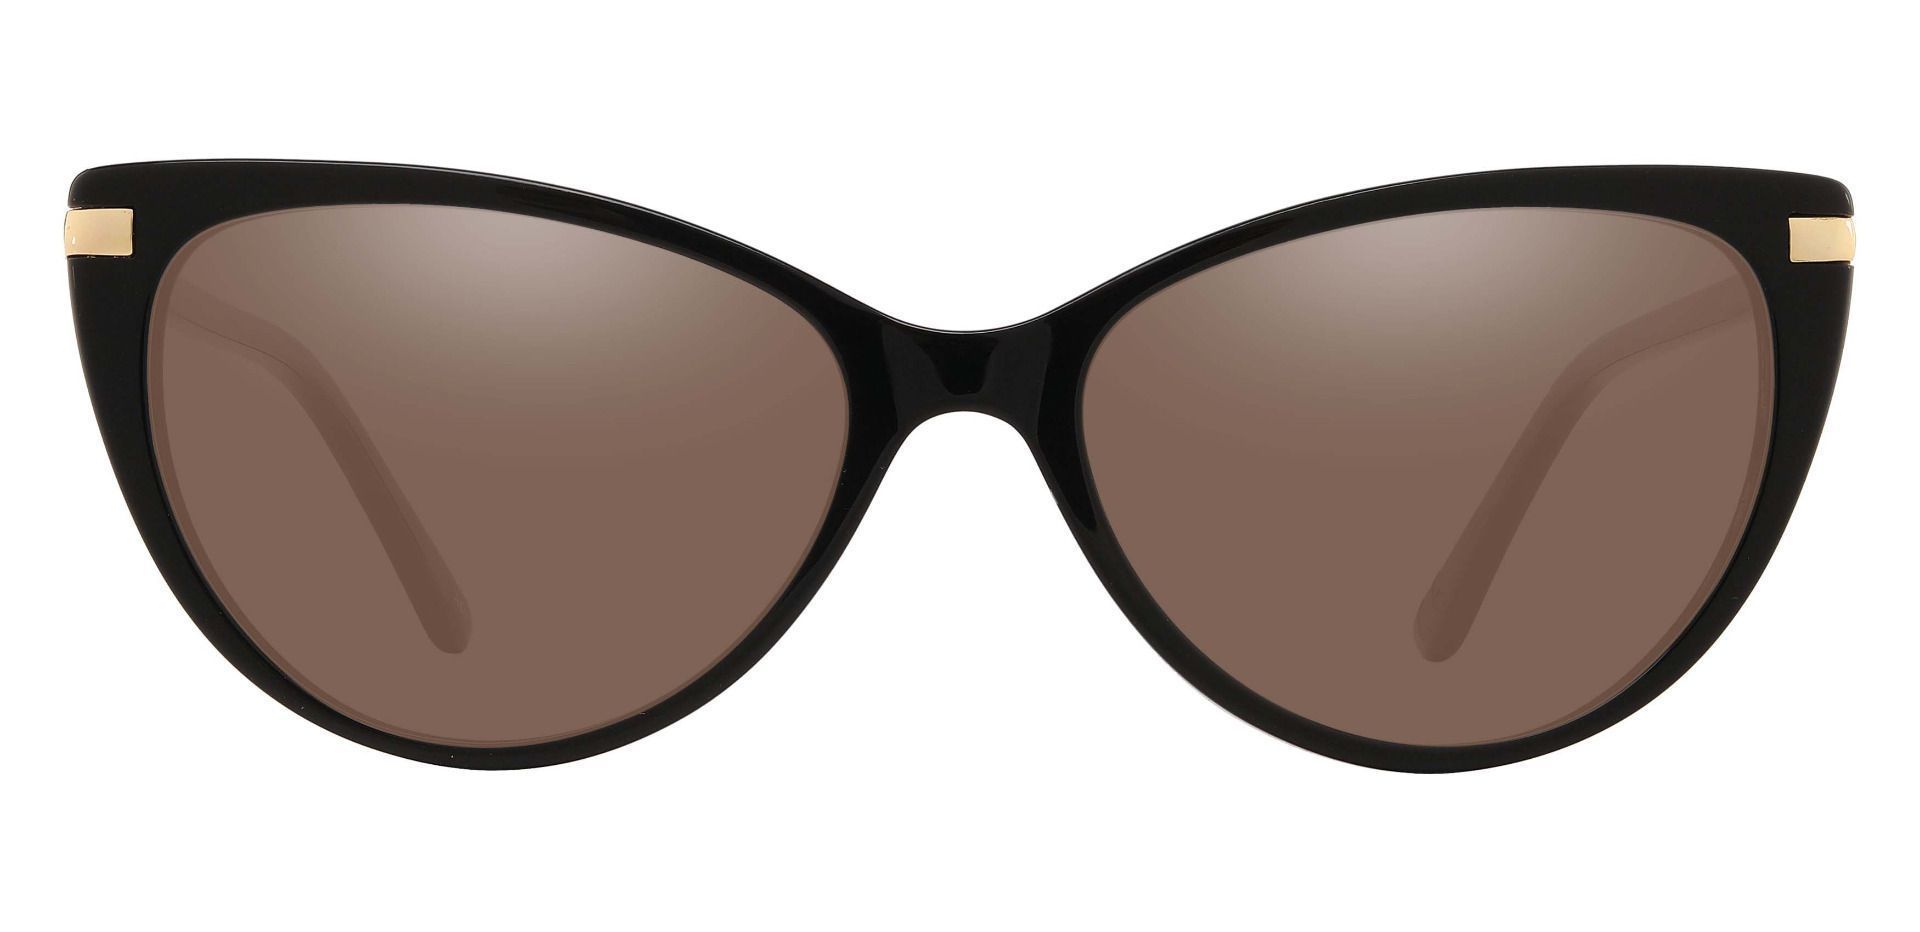 Starla Cat Eye Prescription Sunglasses - Black Frame With Brown Lenses